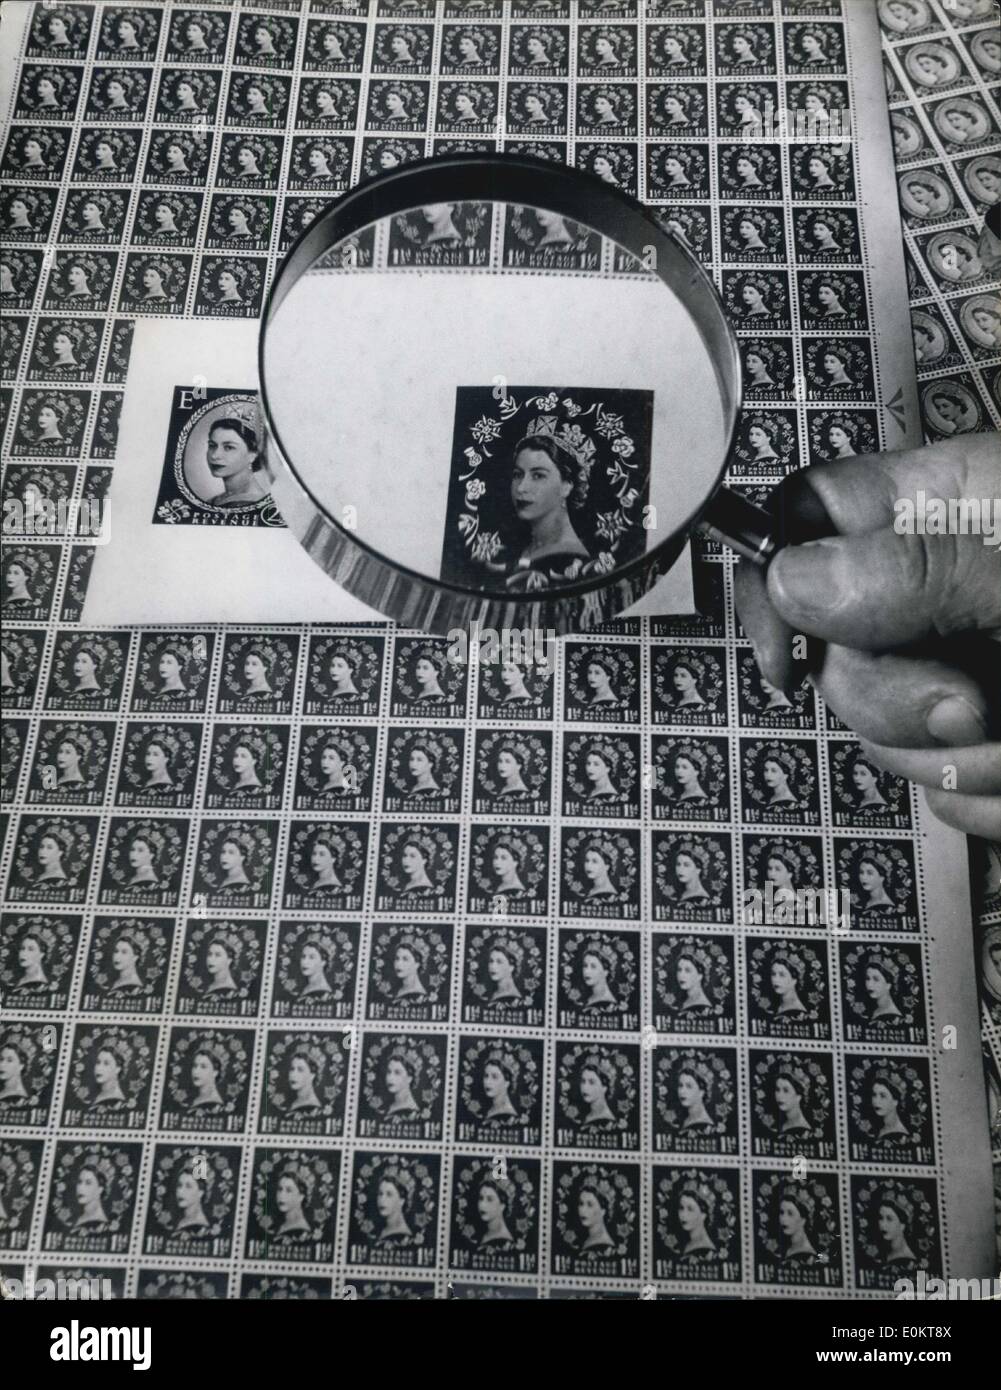 Jan 1, 1950 - Faire de la nouvelle émission de timbres-poste - 24 millions d'entre eux : un contrôleur utilise une loupe pour chercher des failles dans les rares feuilles de timbres qui sont à la hâte pour la question générale de la semaine prochaine. Ils sont imprimés à une usine de High Wycombe. (Date précise inconnue). Banque D'Images